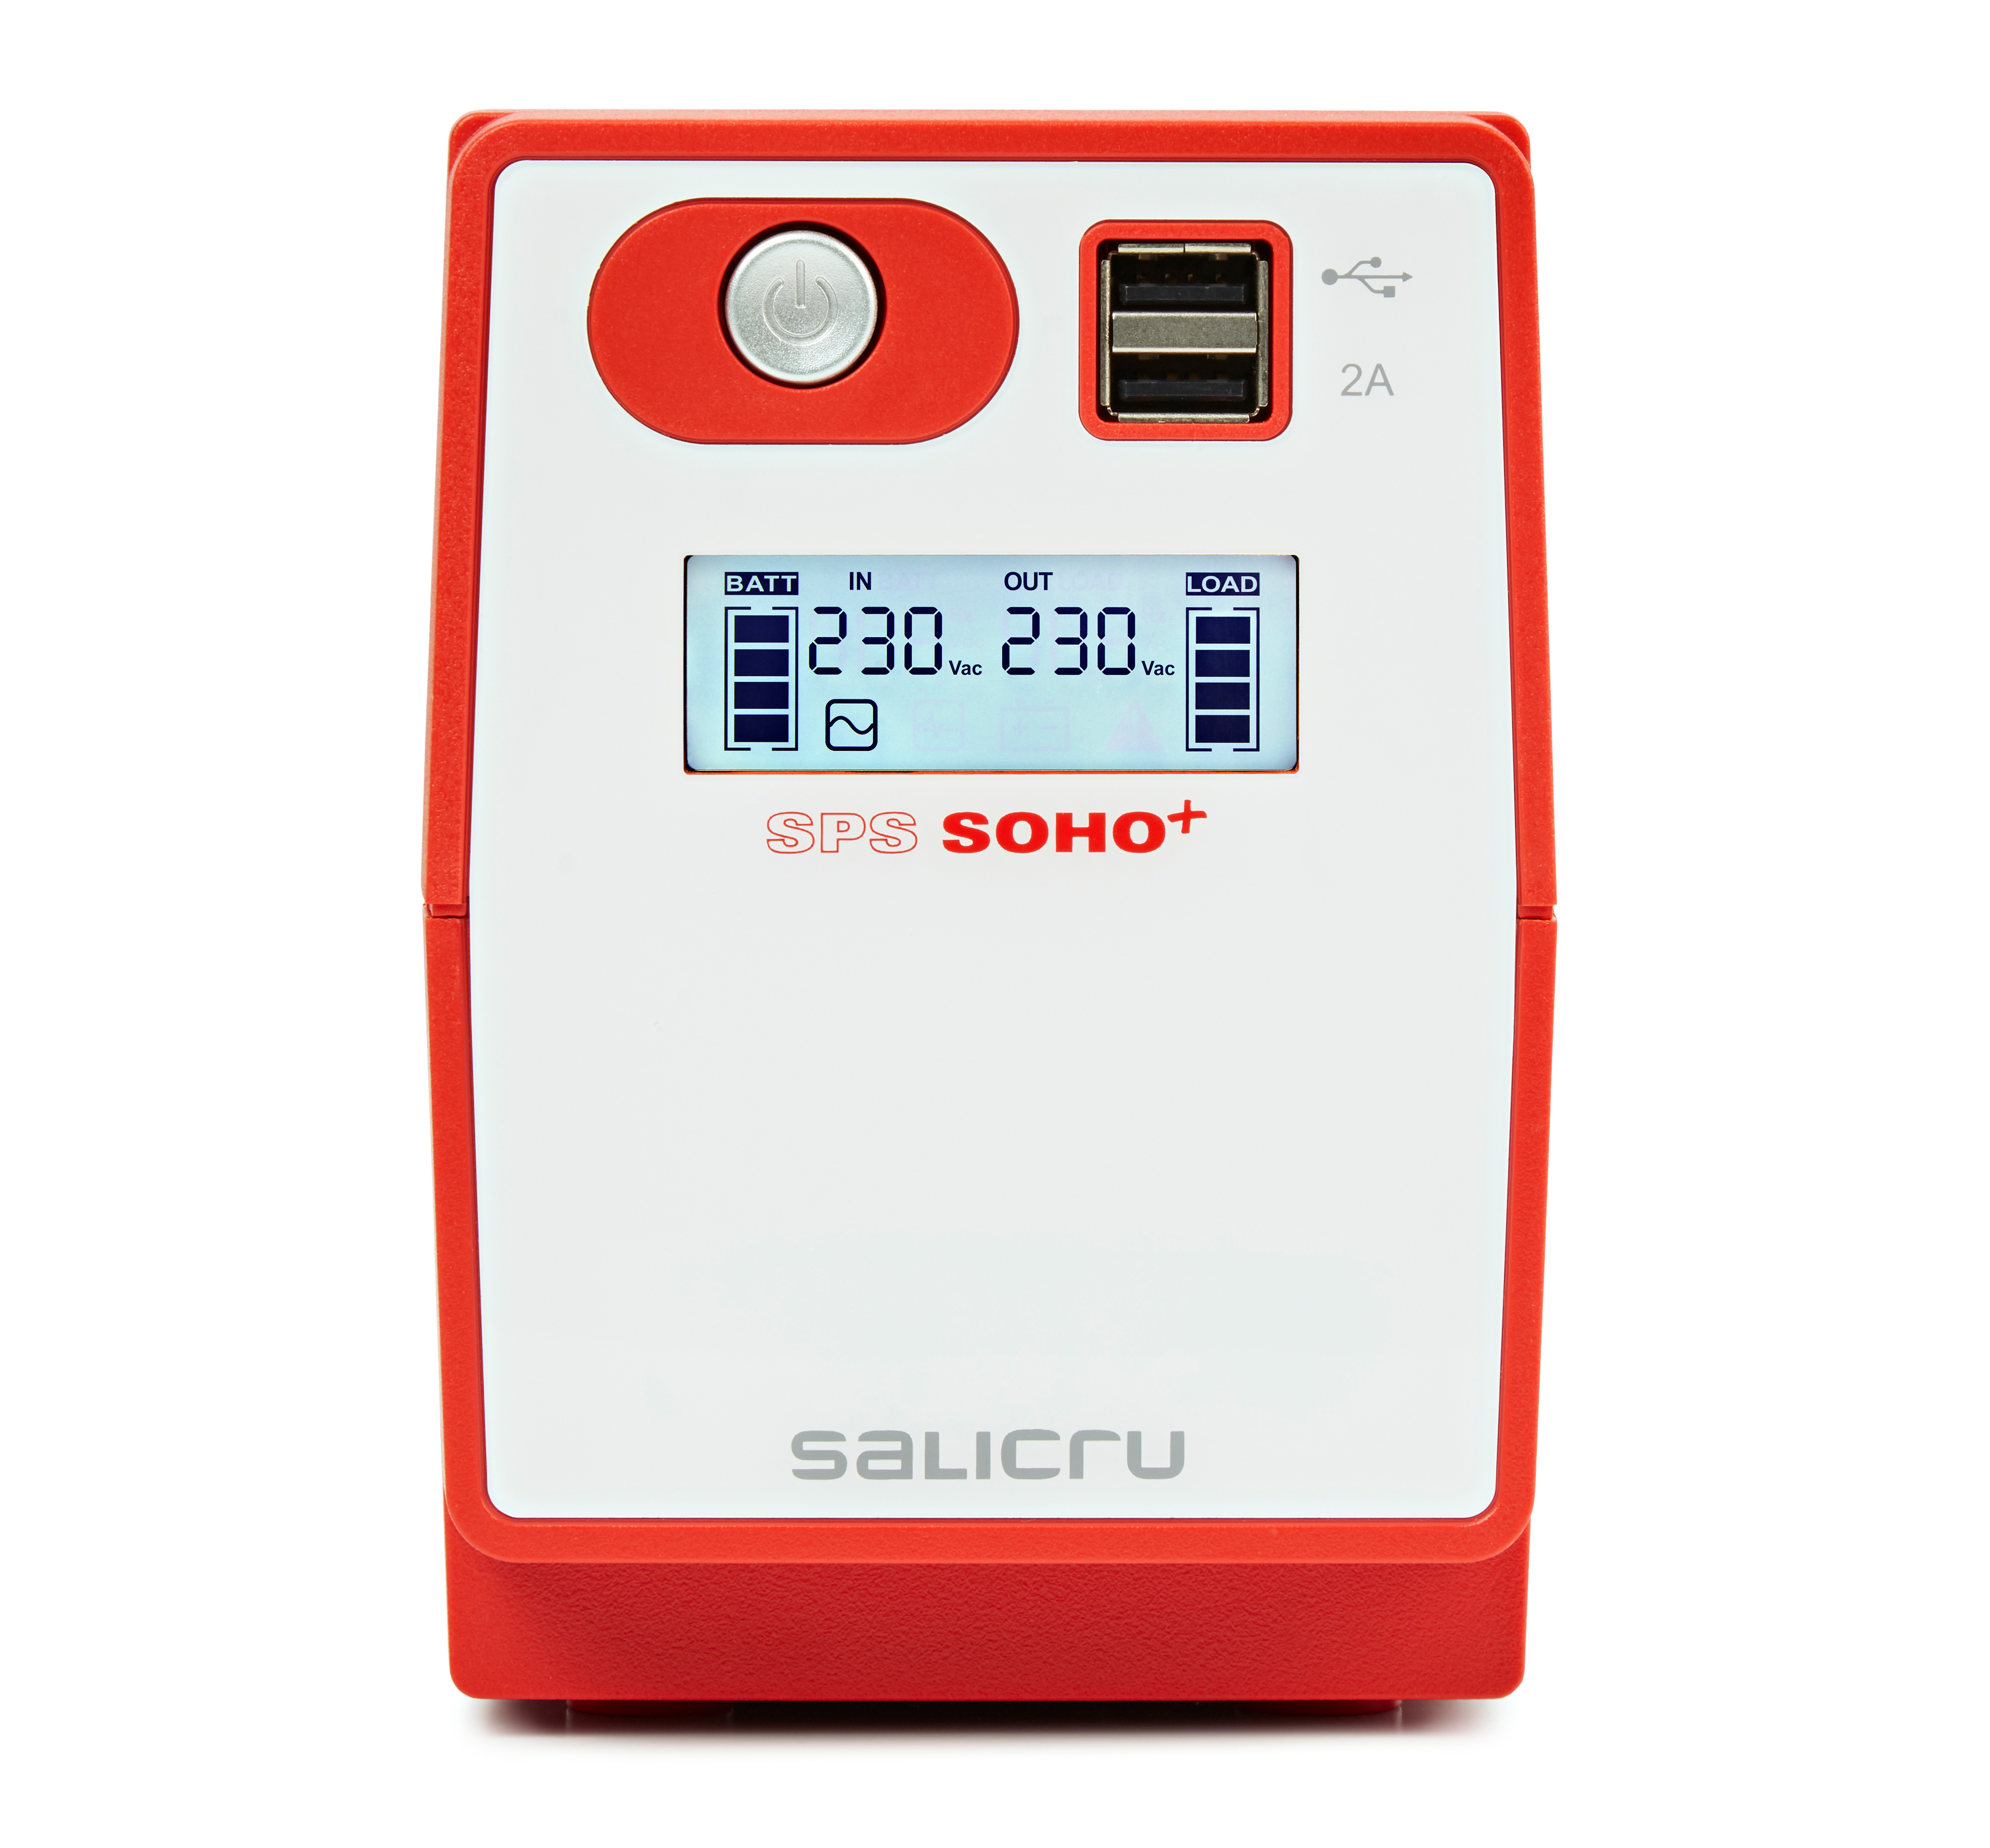 SALICRU SPS SOHO+ SPS 850 SOHO+ - USV - Wechselstrom 230 V